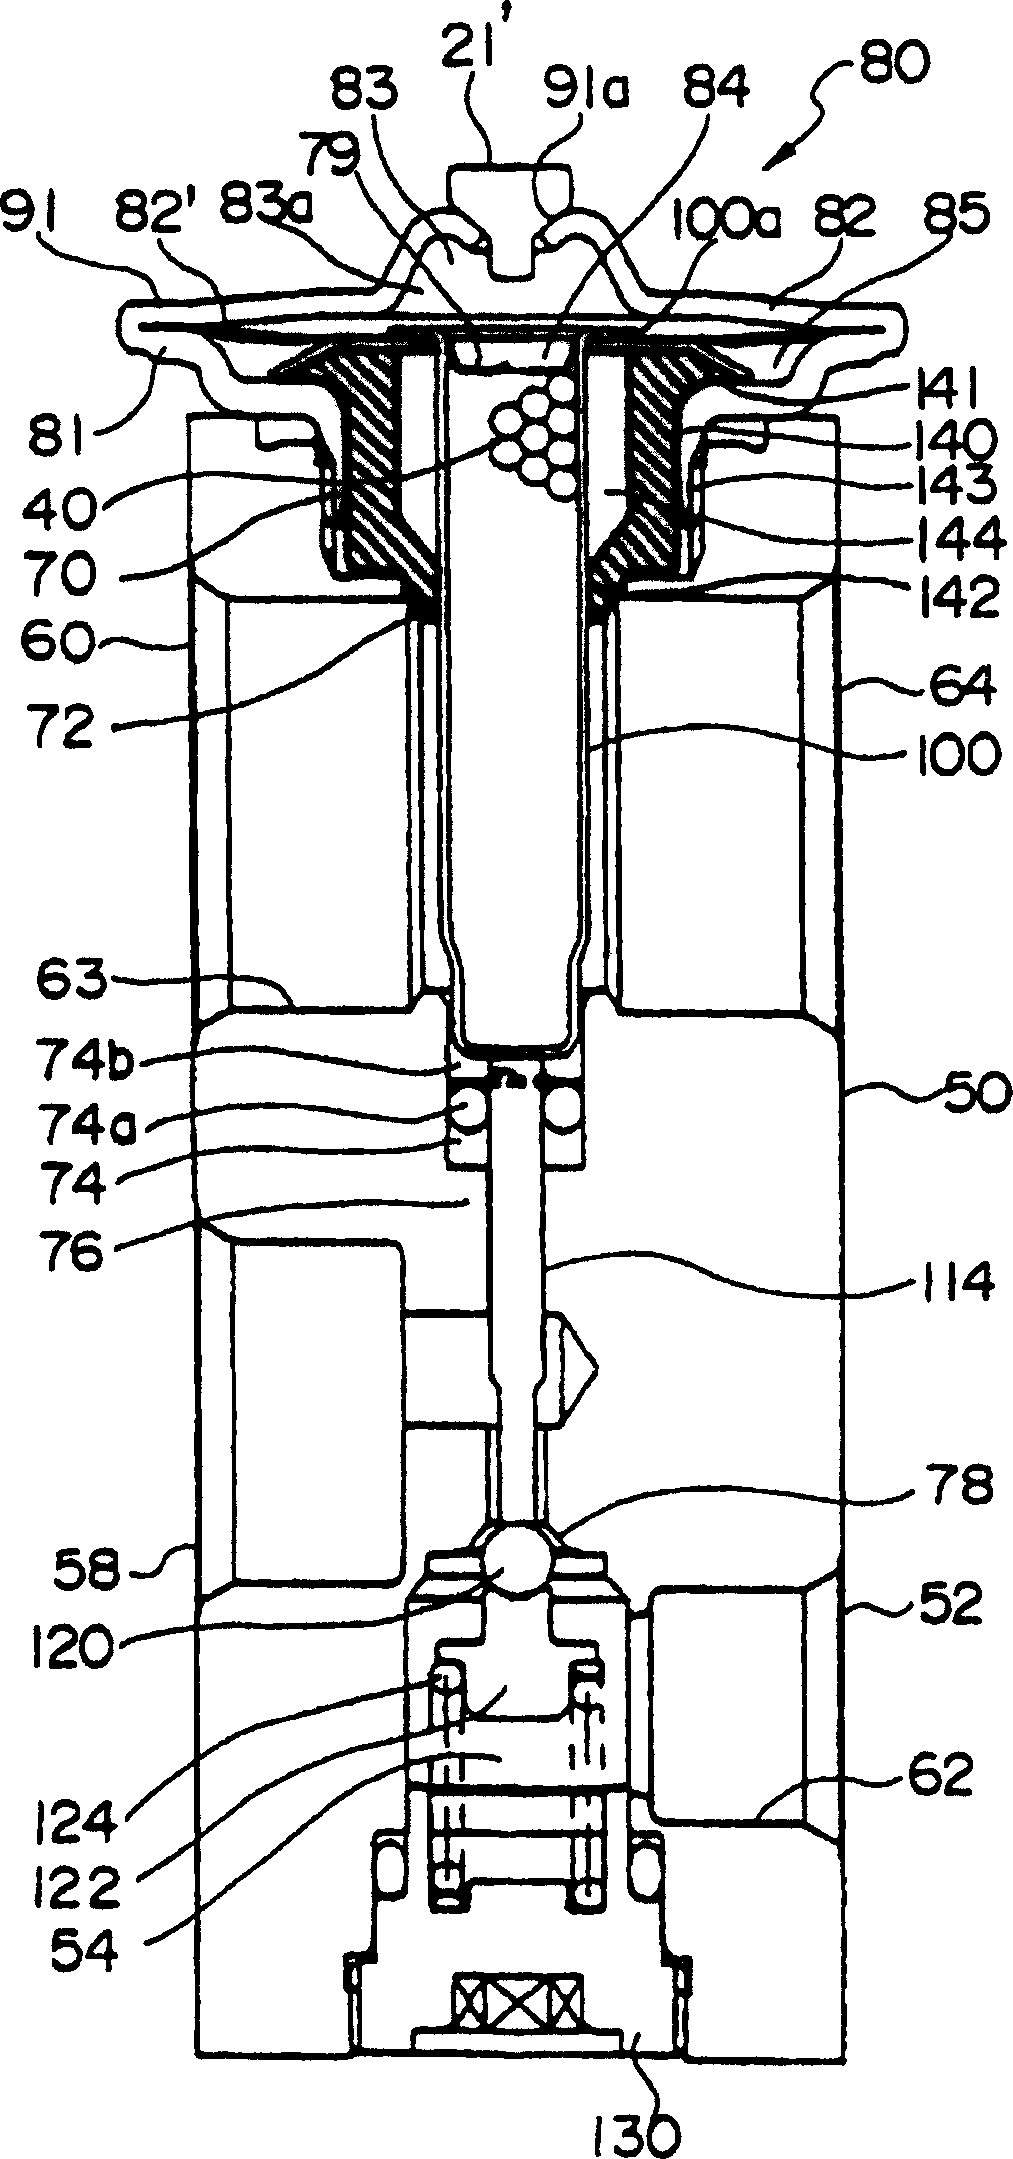 Temperature expansion valve